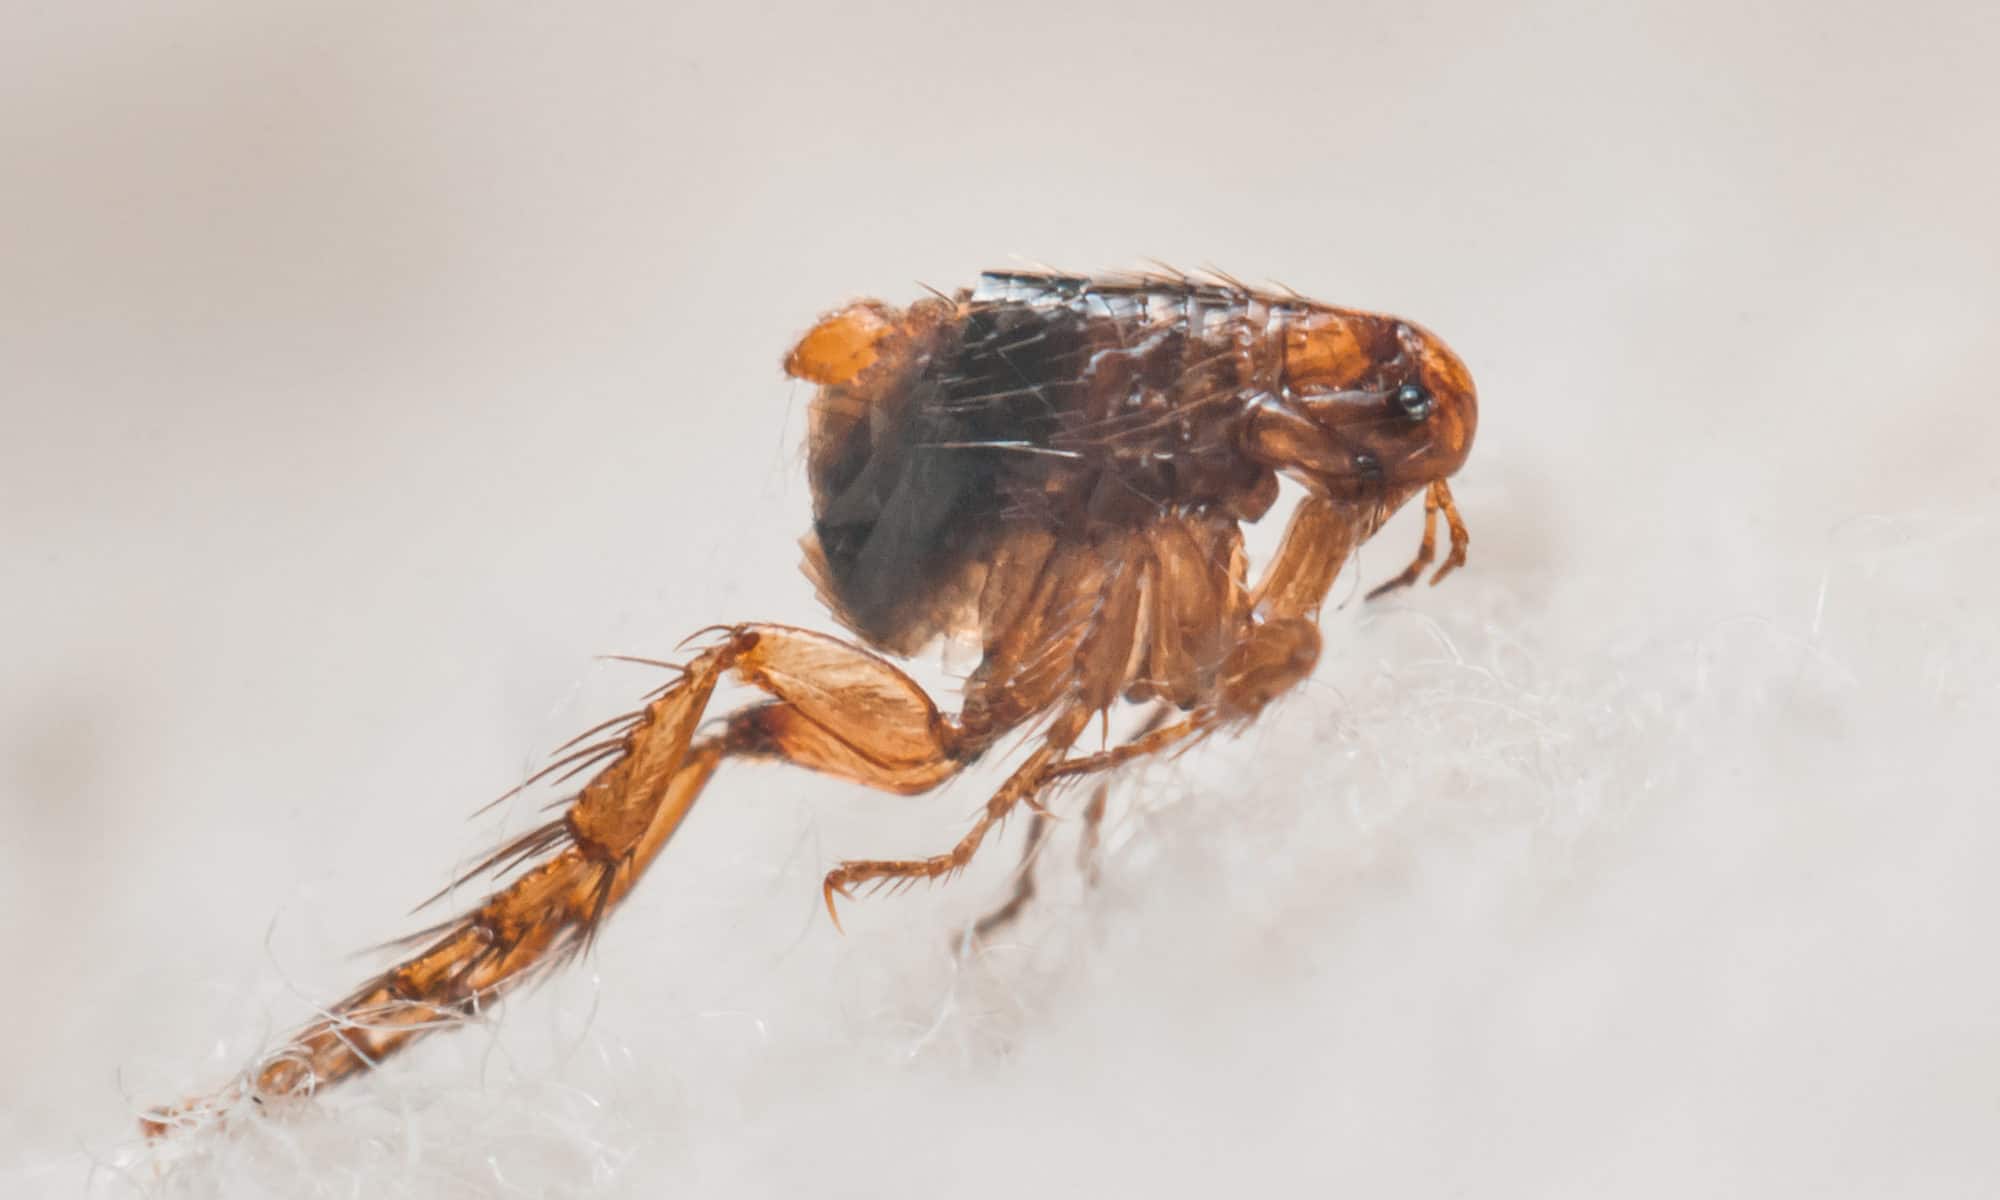 A close-up of a flea